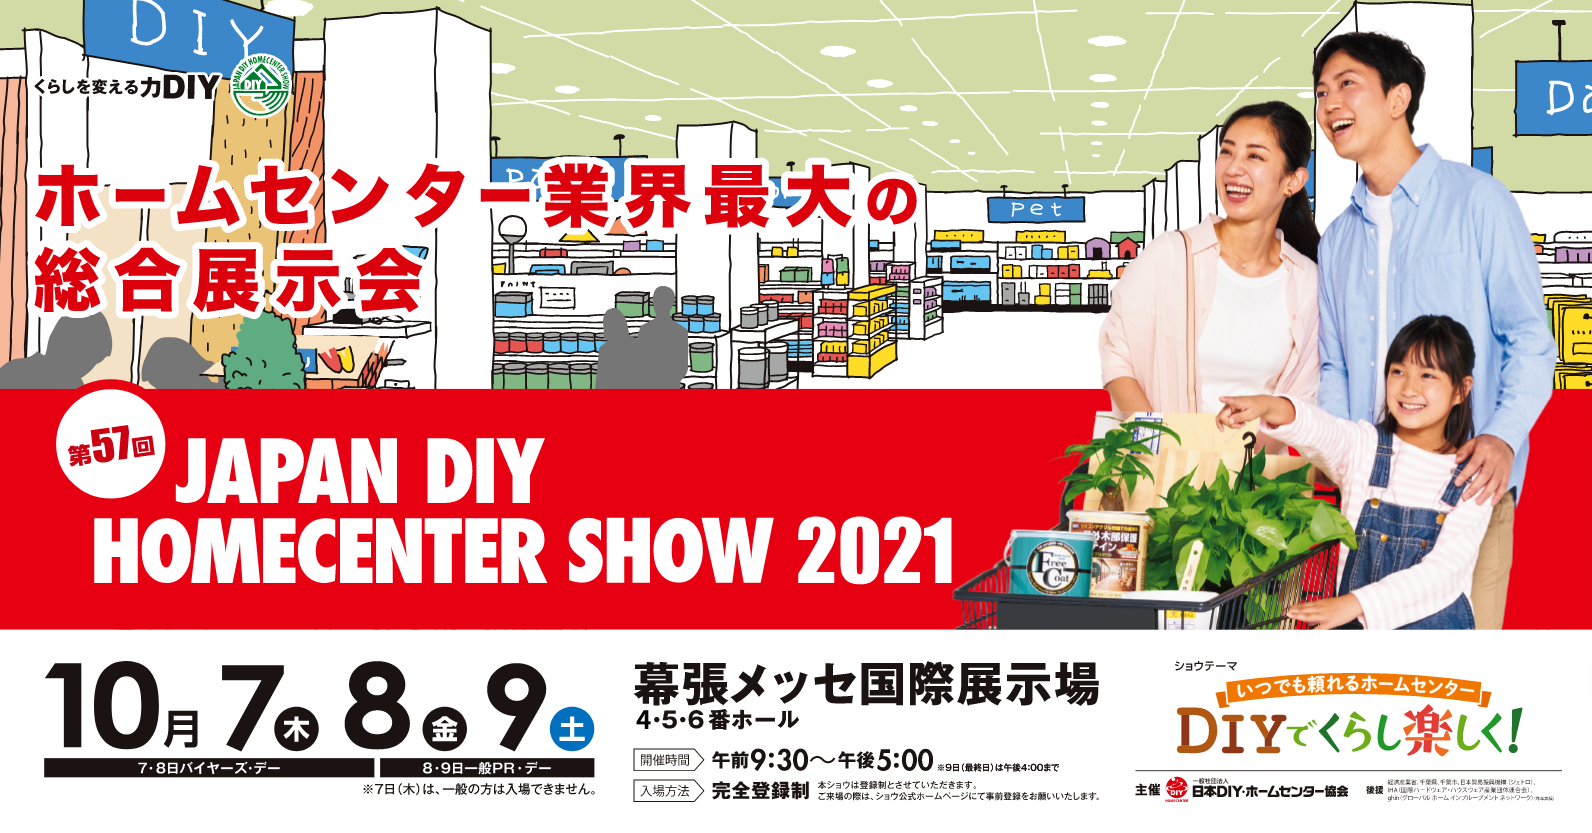 JAPAN DIY HOMECENTER SHOW 2021 に初出展いたします